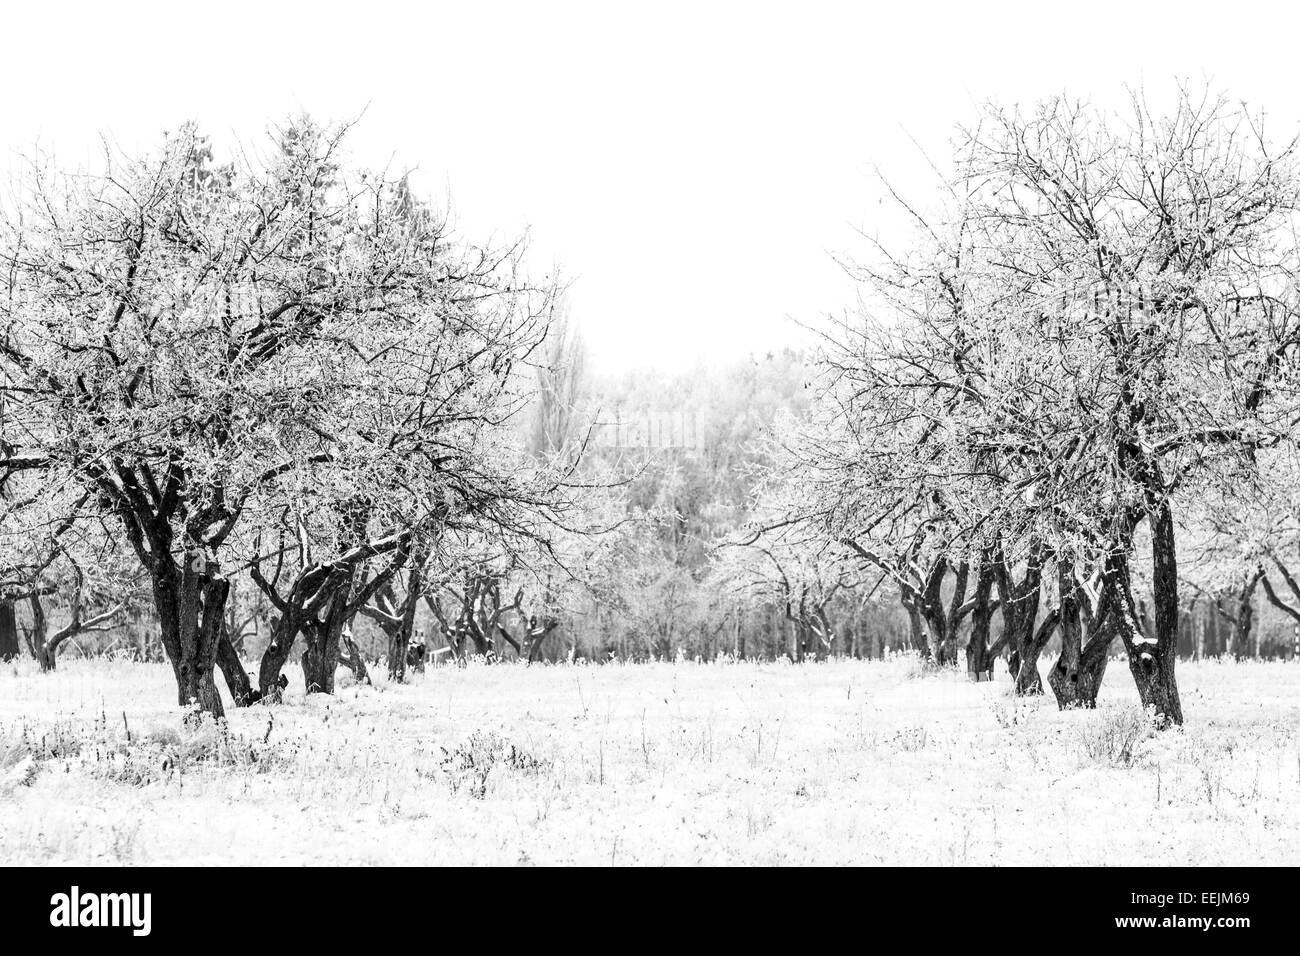 Paysage d'hiver dans la région de apple tree garden. Image en noir et blanc Banque D'Images